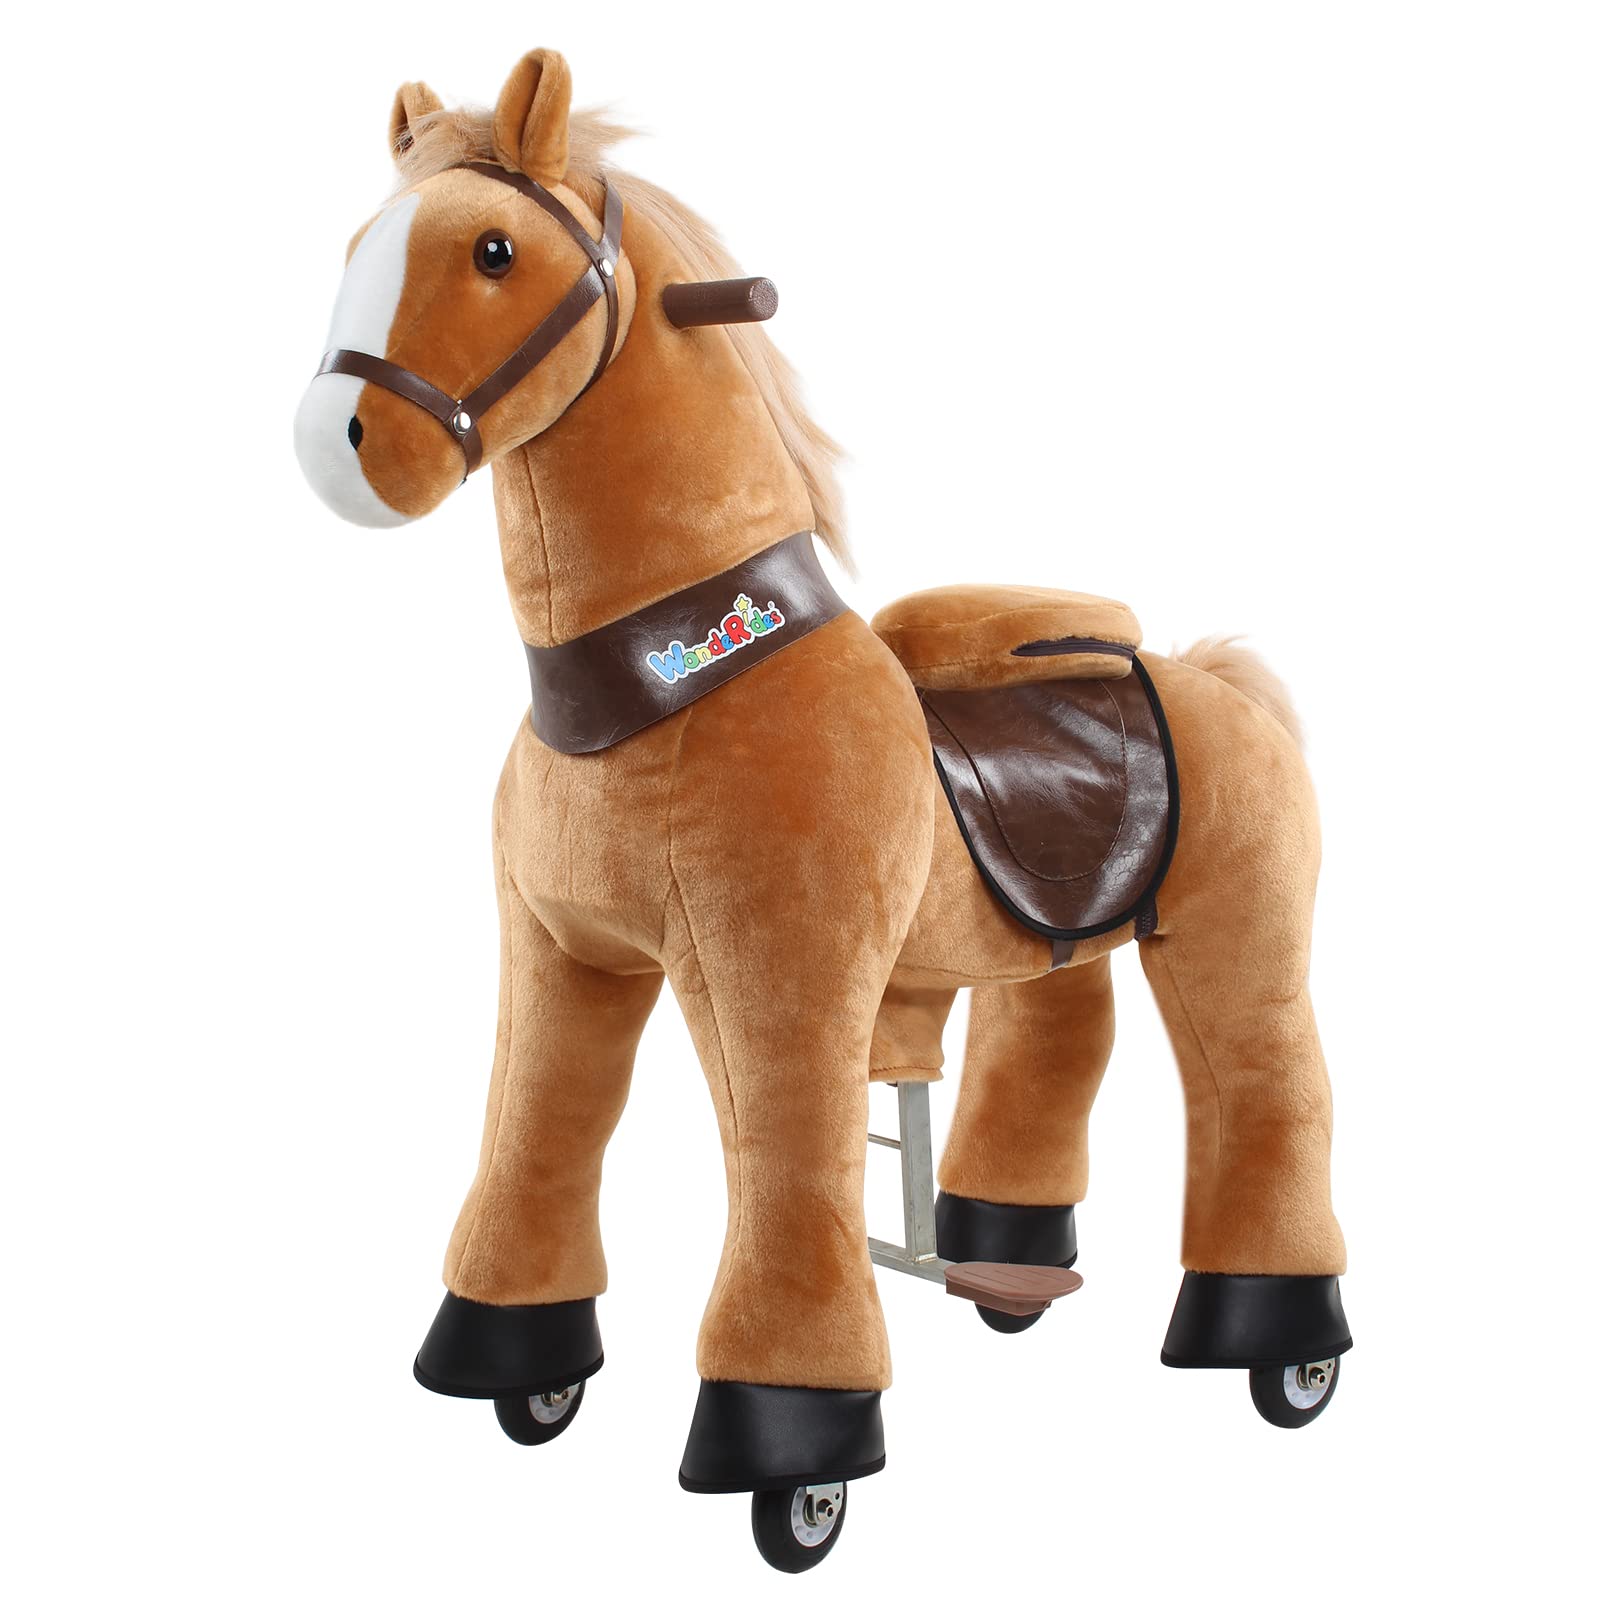 WondeRides Ride on Rocking Horse Toy Plush Walking Animal giddy up Pony Mechanical Riding Horse Medium Size 4 for Toddler Age 4-